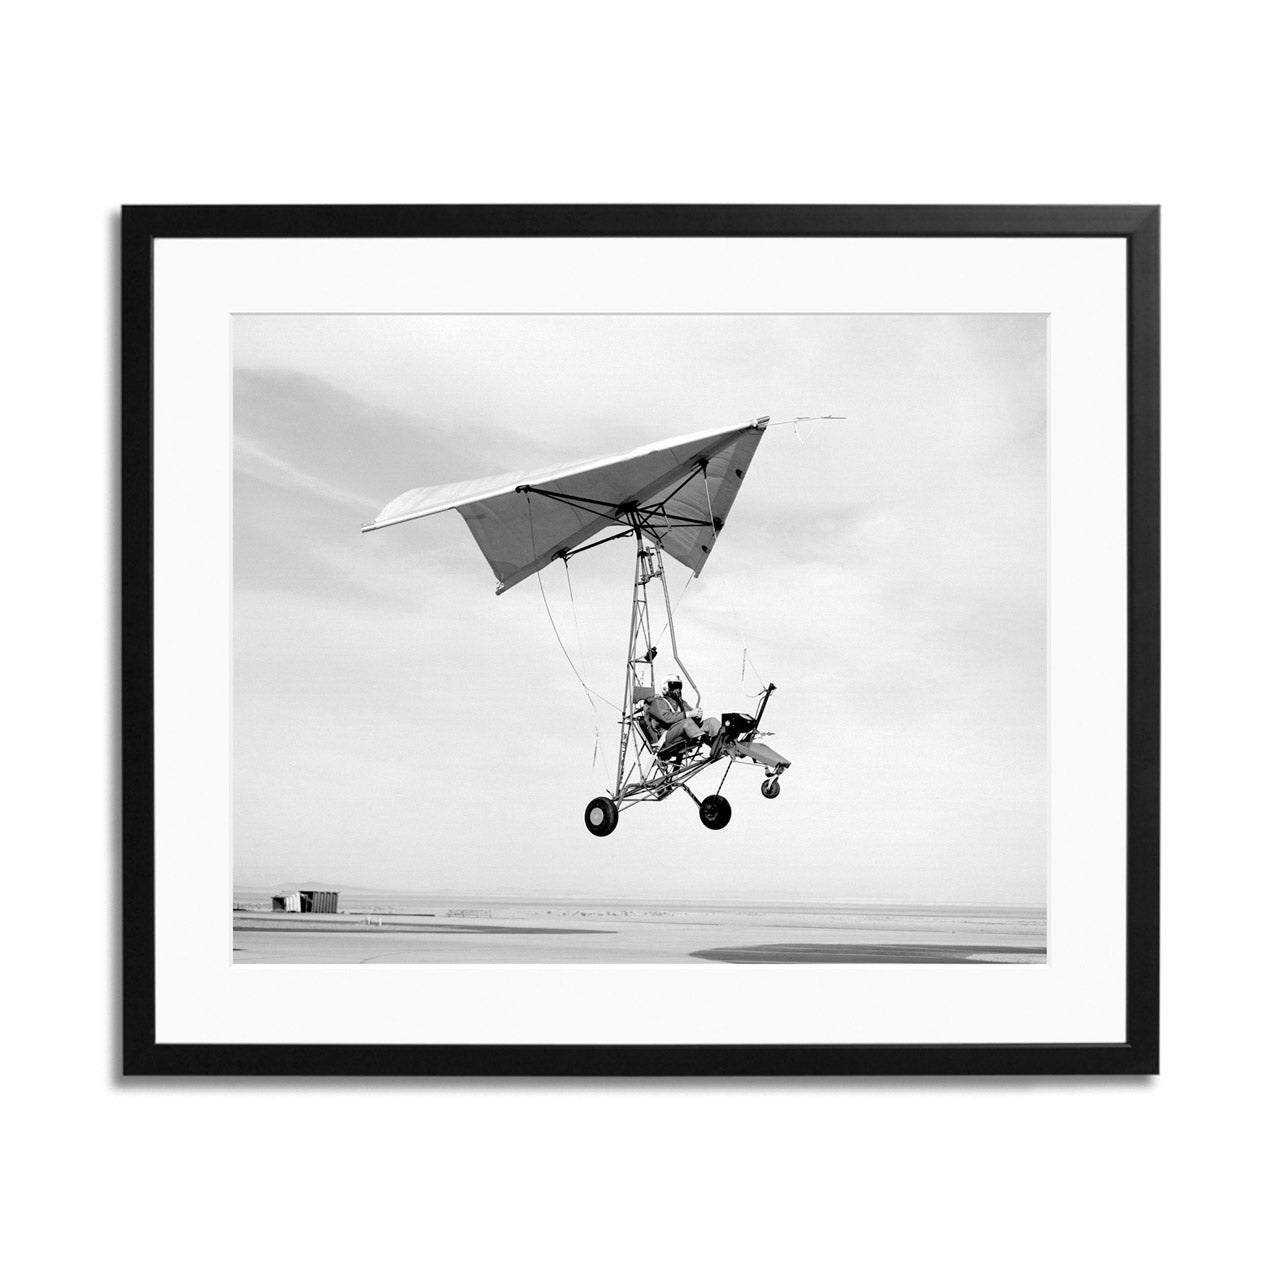 Edwards Air Force Base Paraglider Landing Framed Print